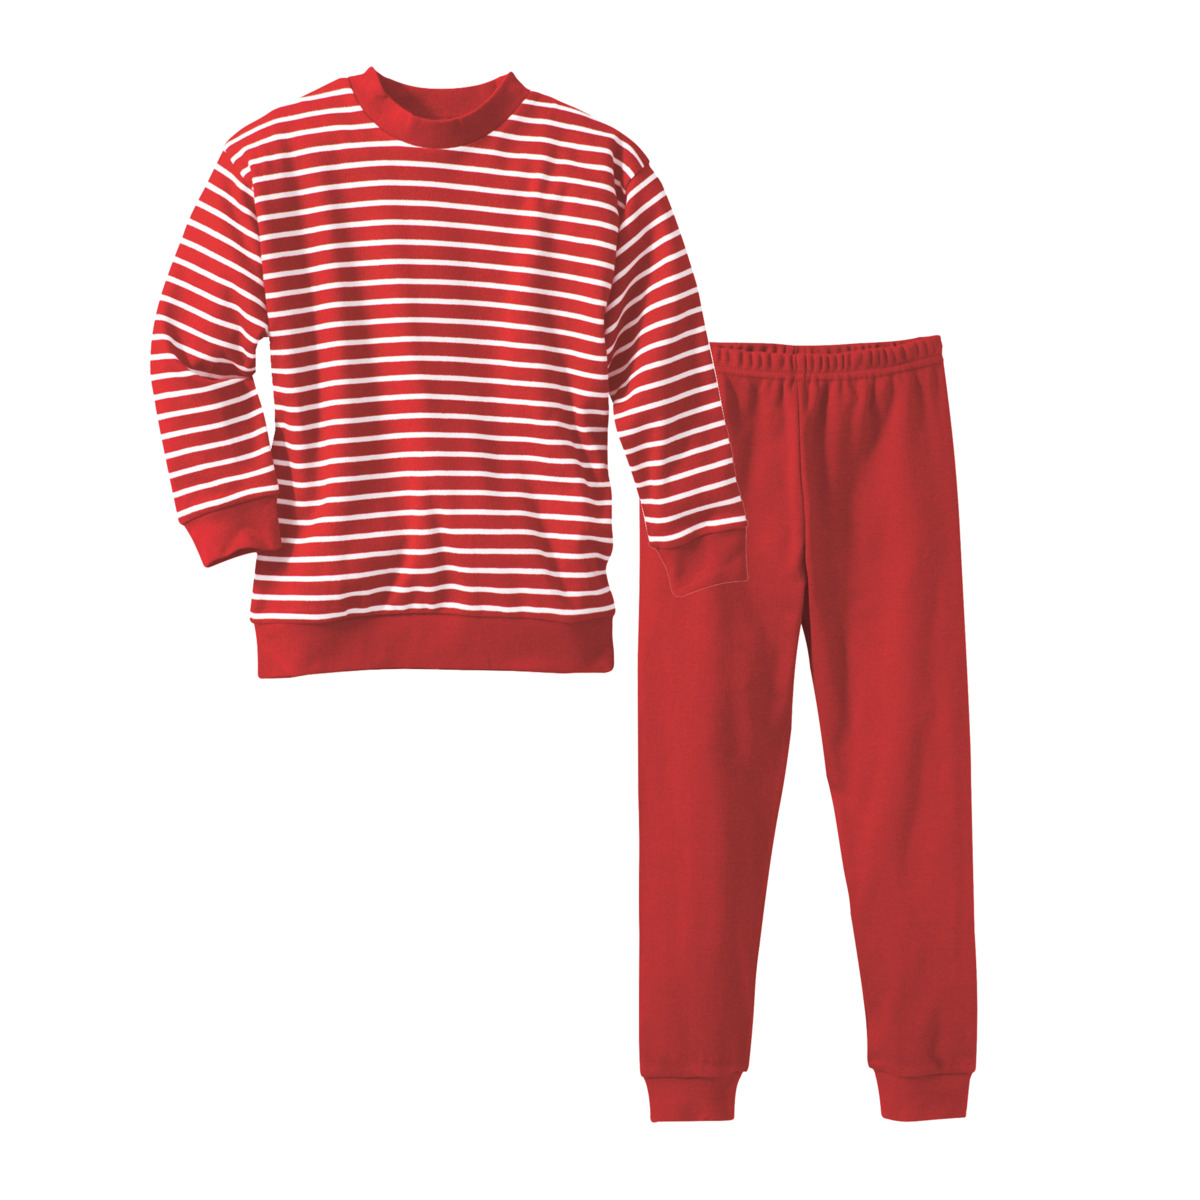 Striped Pyjamas, 